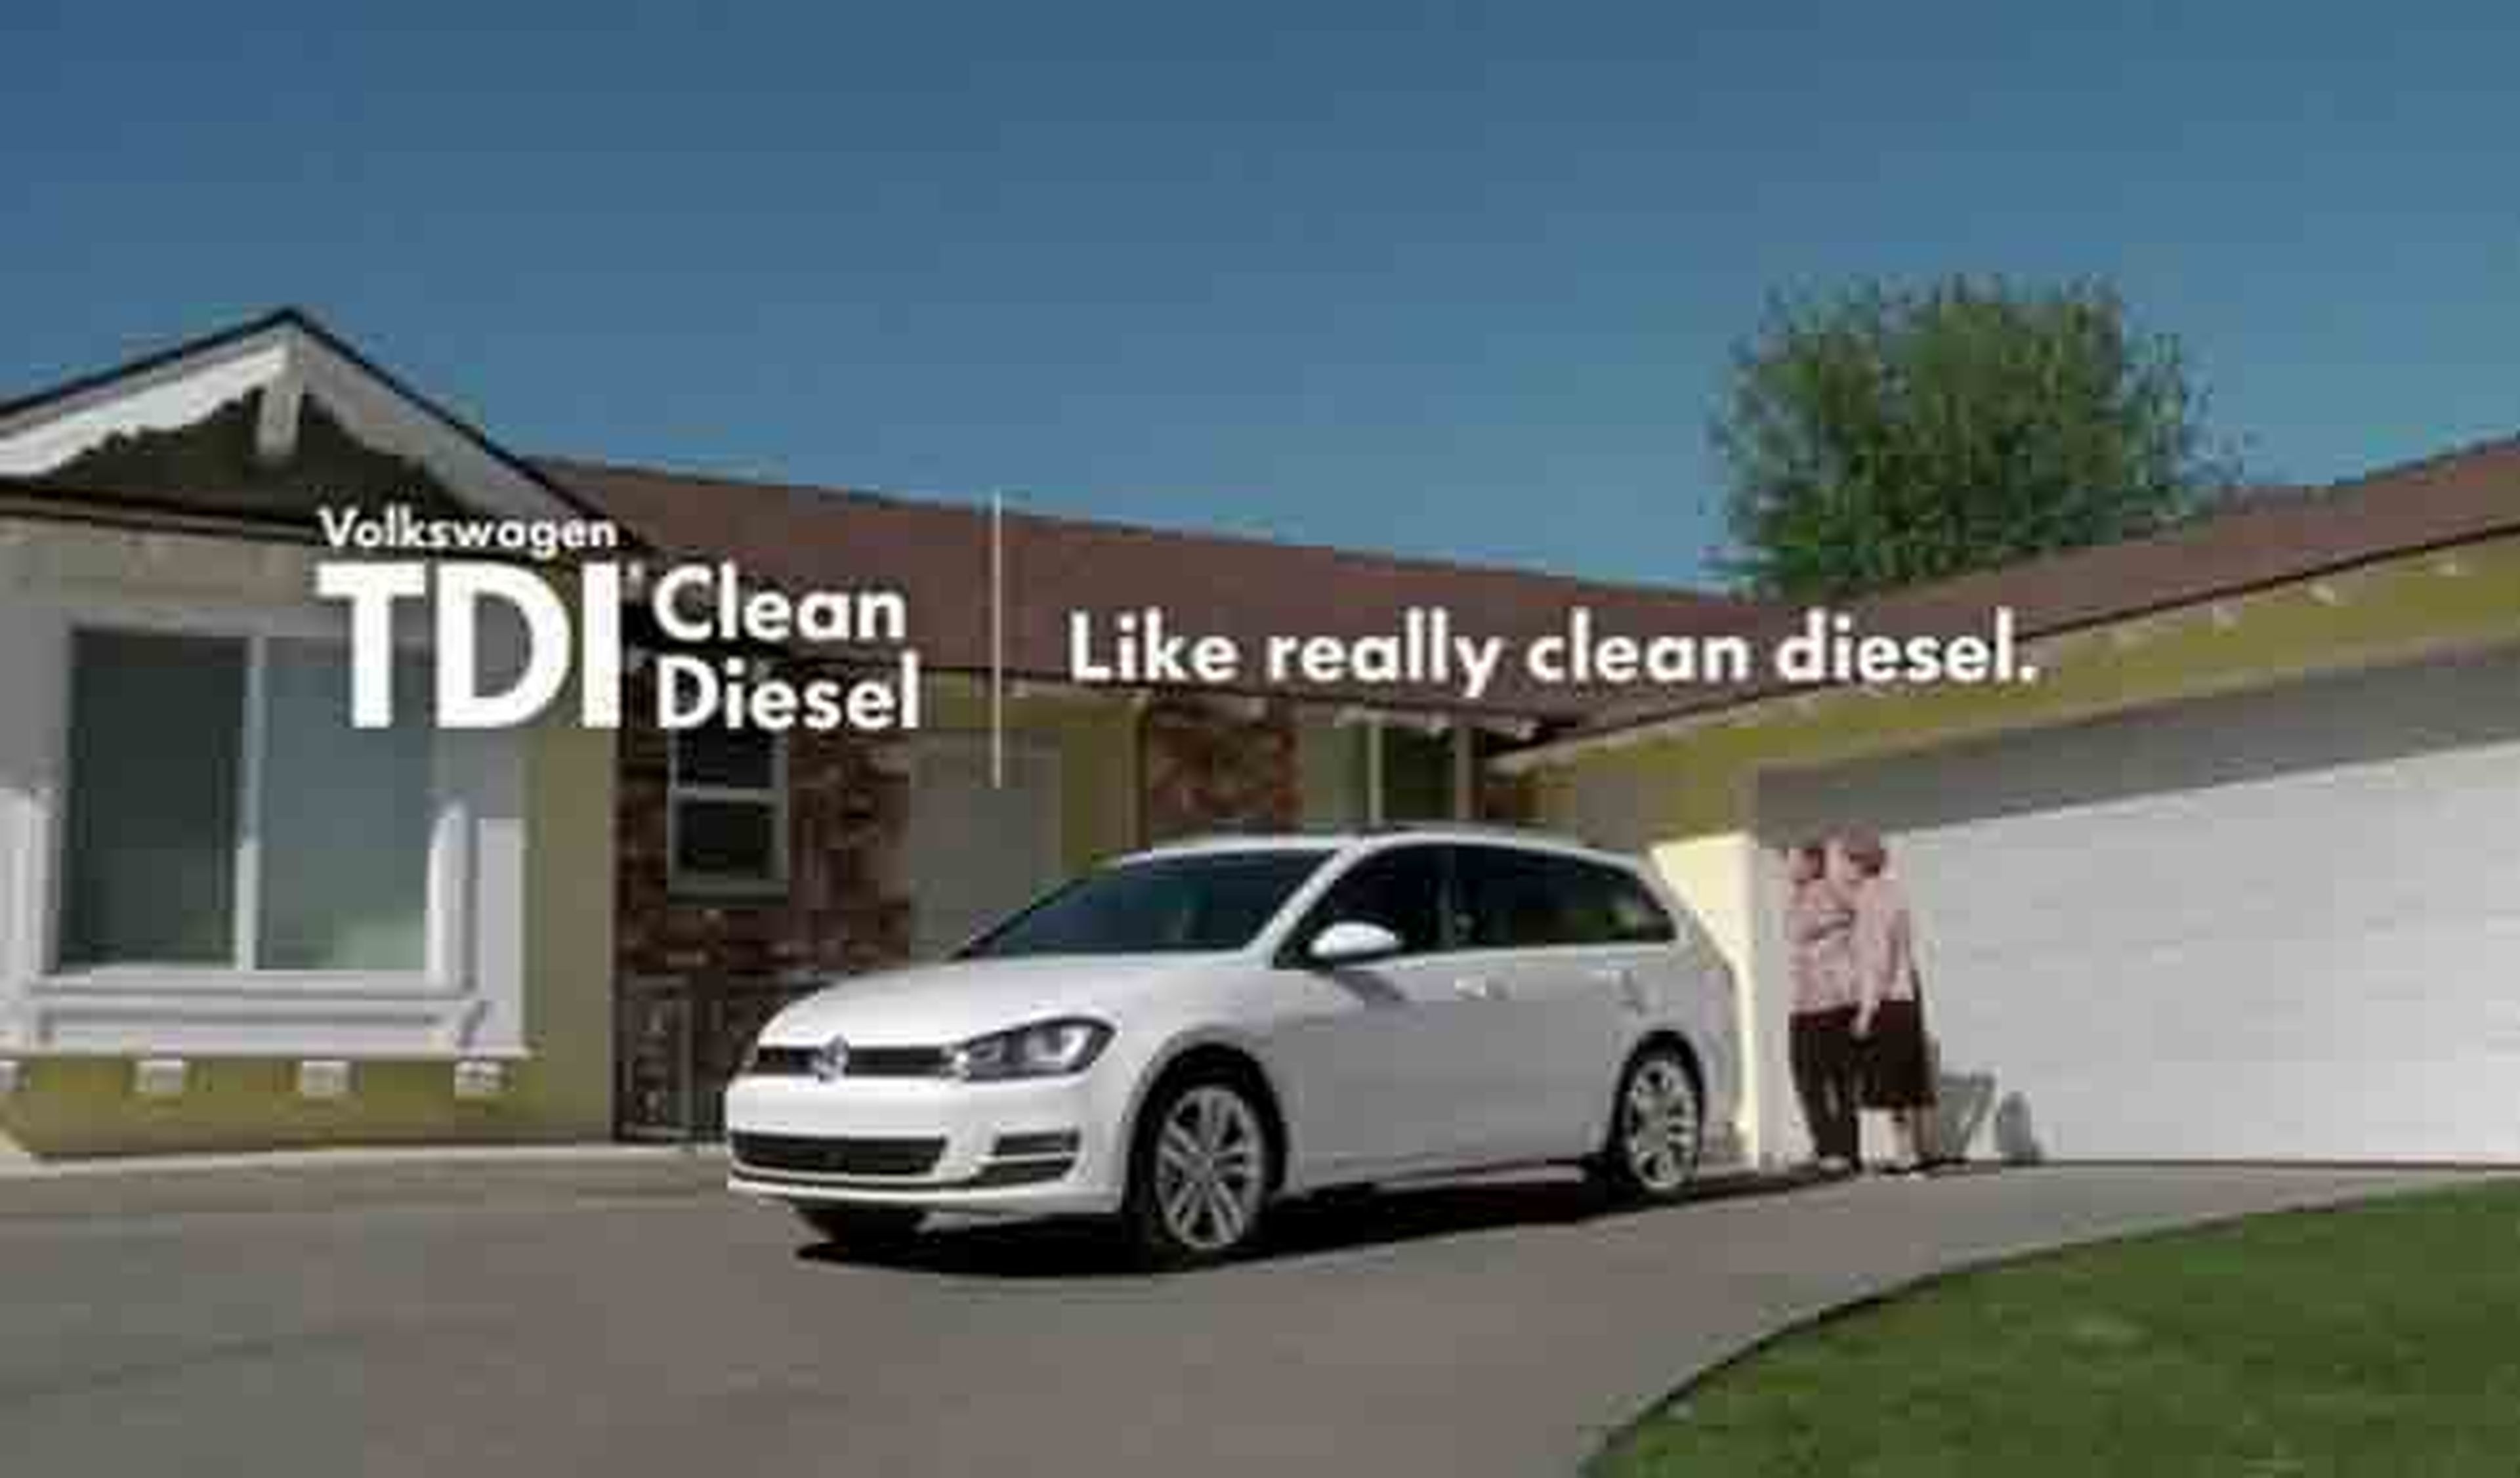 EEUU demanda a VW por engañar con su campaña diésel limpio